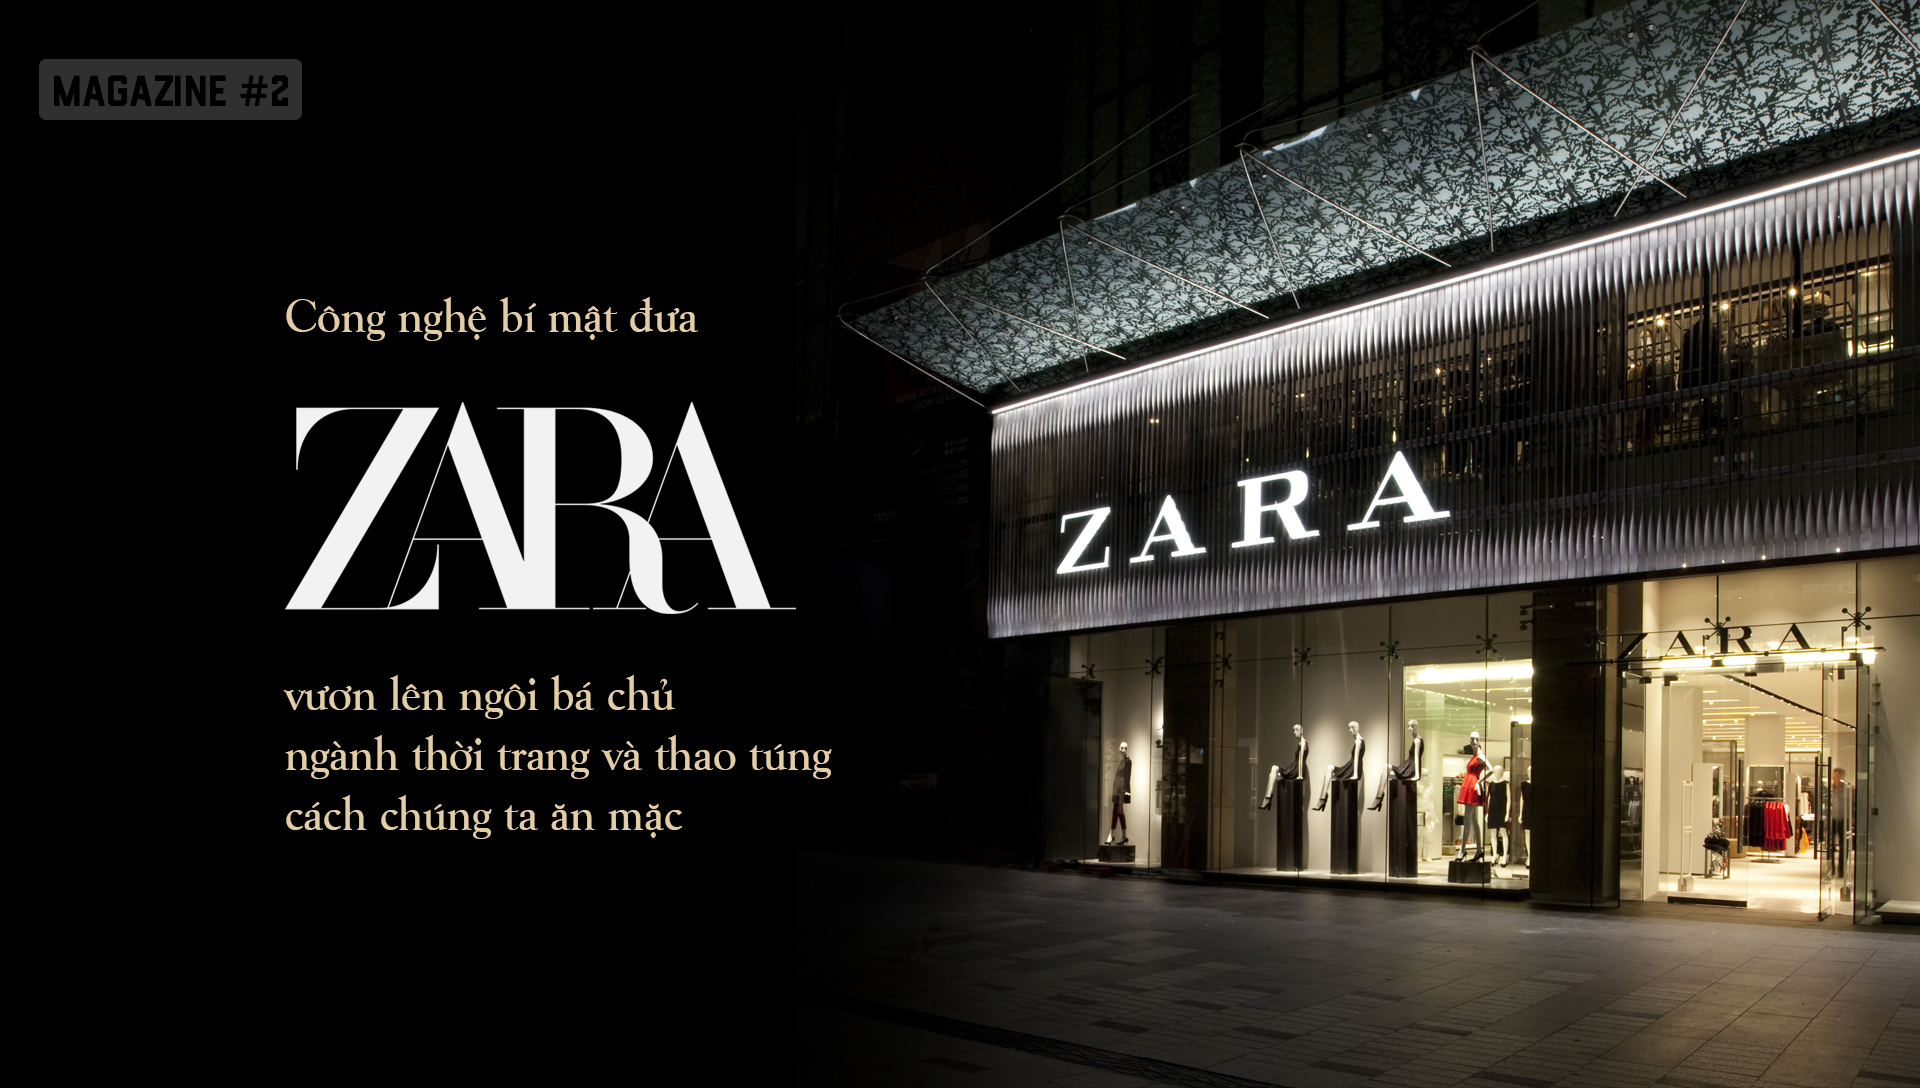 ZARA đã lật đổ cả ngành thời trang truyền thống, qua mặt Gucci, Prada, trở  thành bá chủ thế giới thao túng cách chúng ta ăn mặc như thế nào?